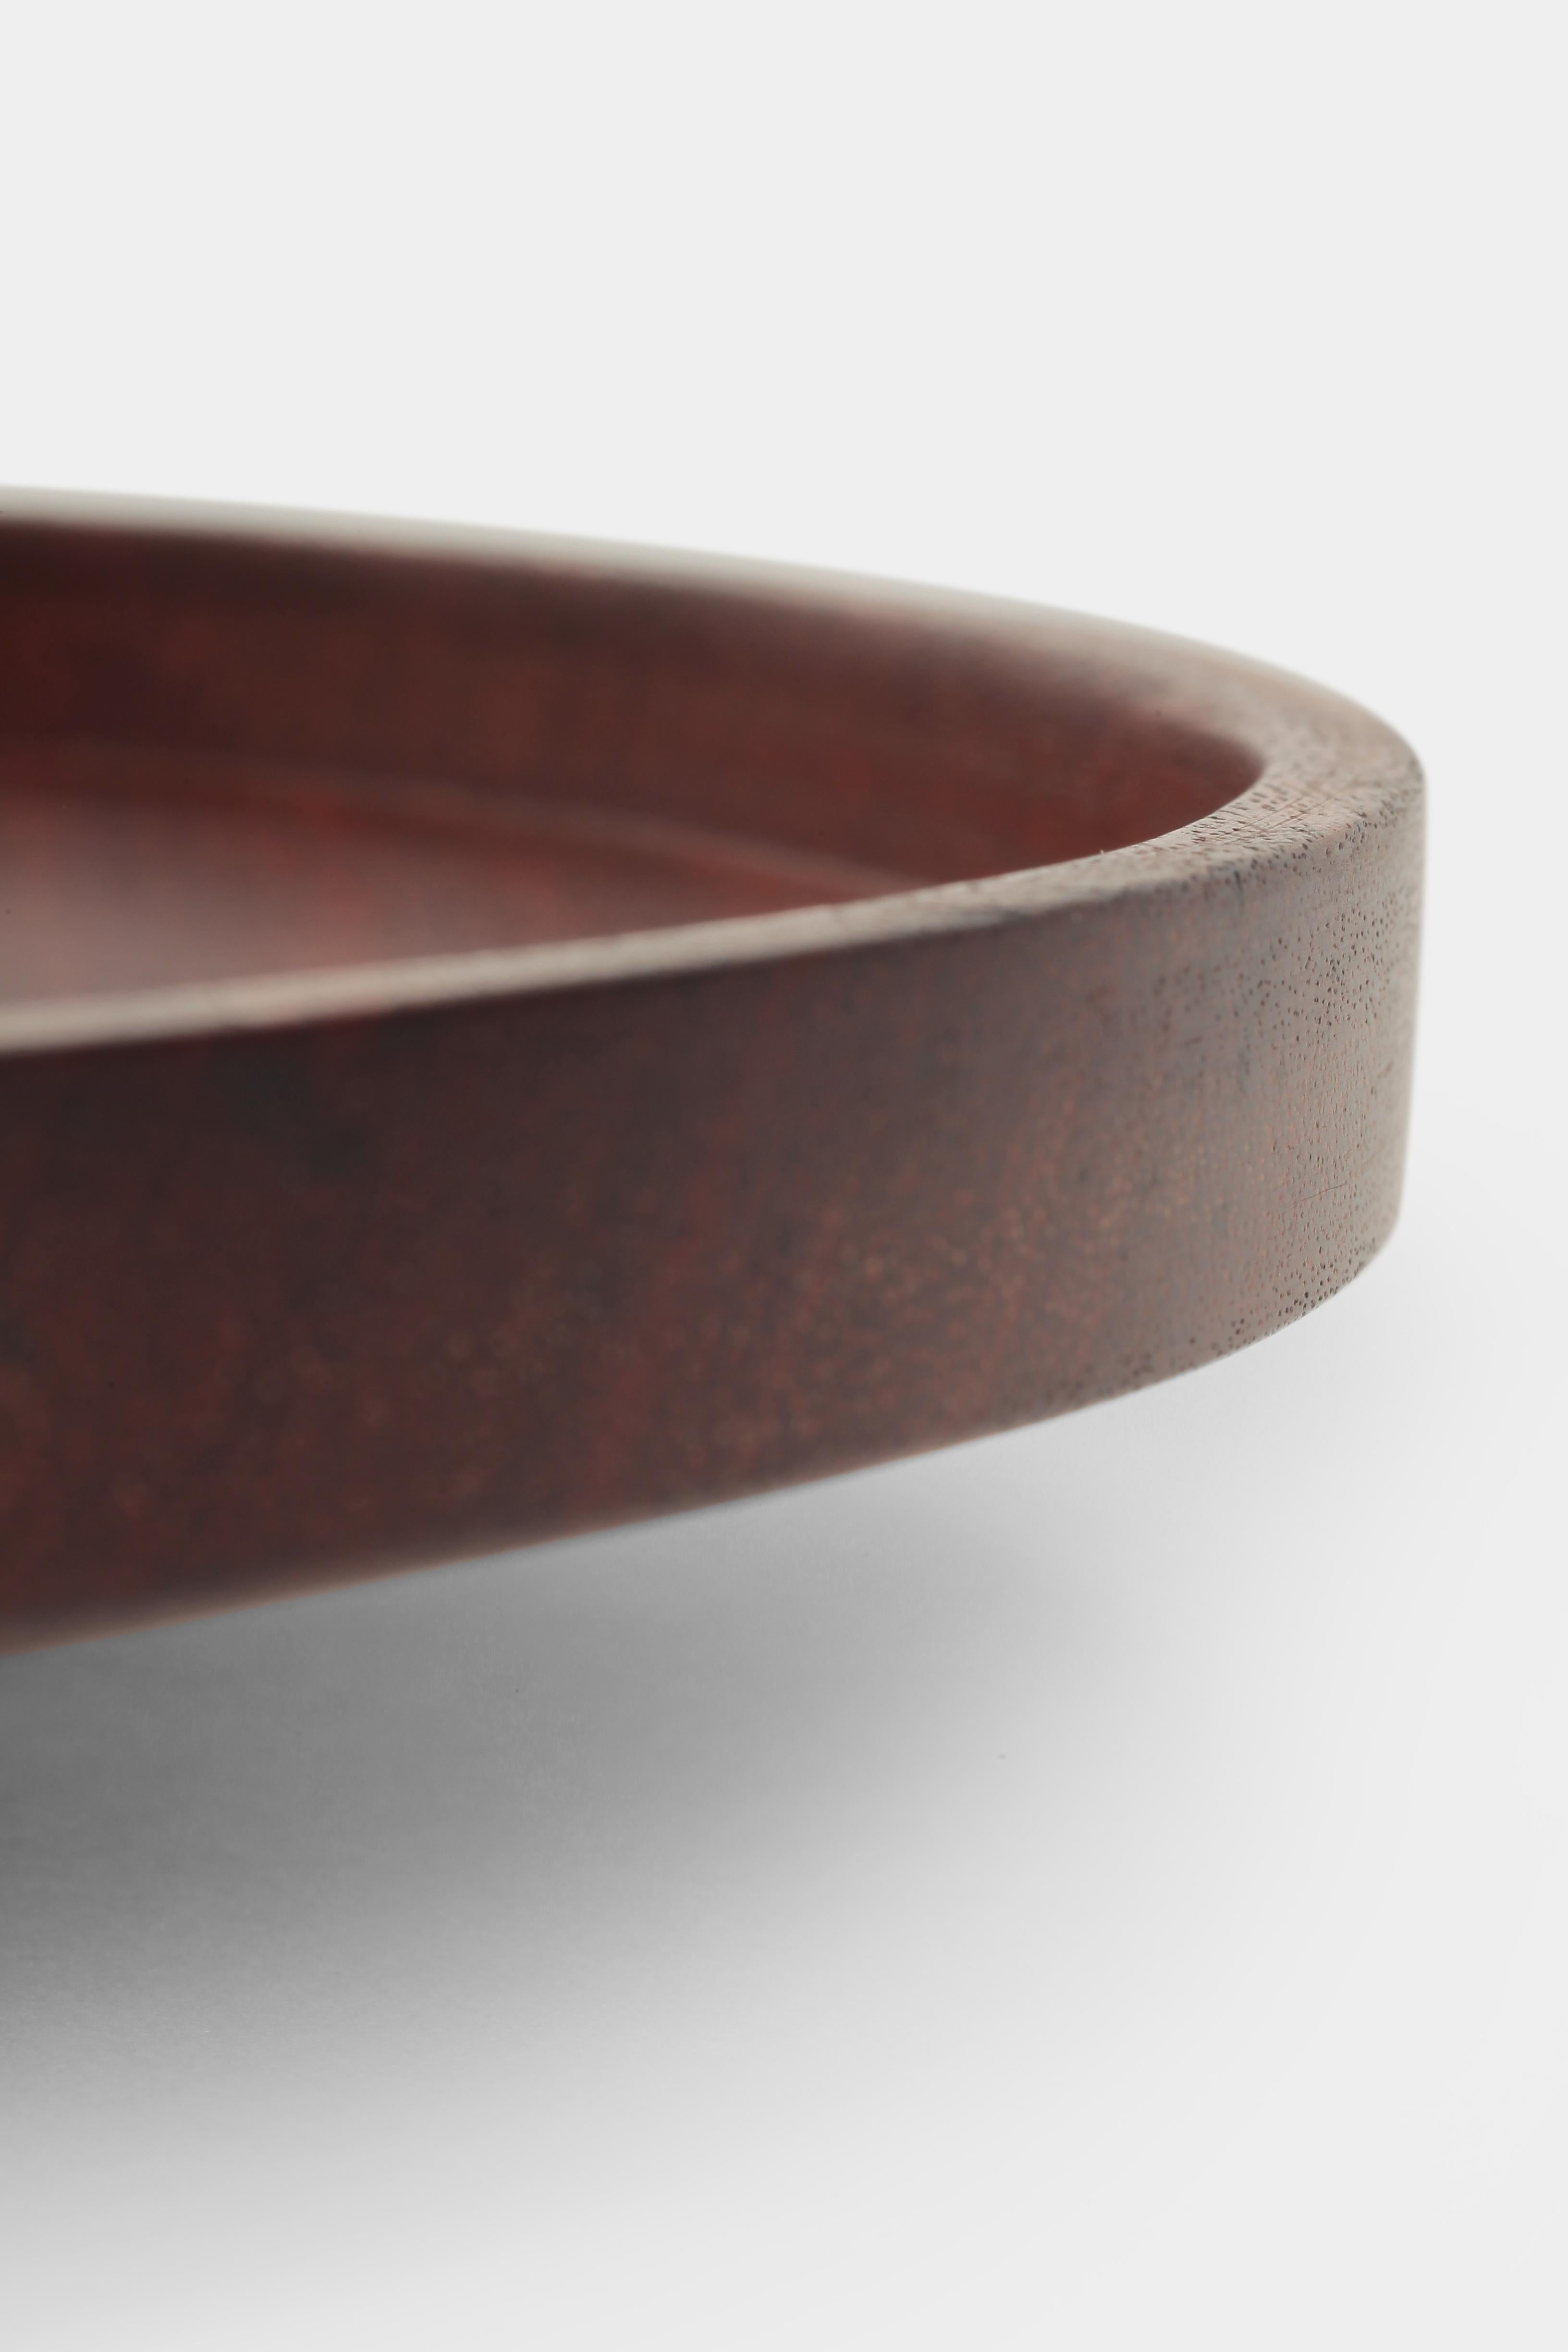 Flat Teak Bowl Hand-Turned Denmark, 1960s For Sale 1